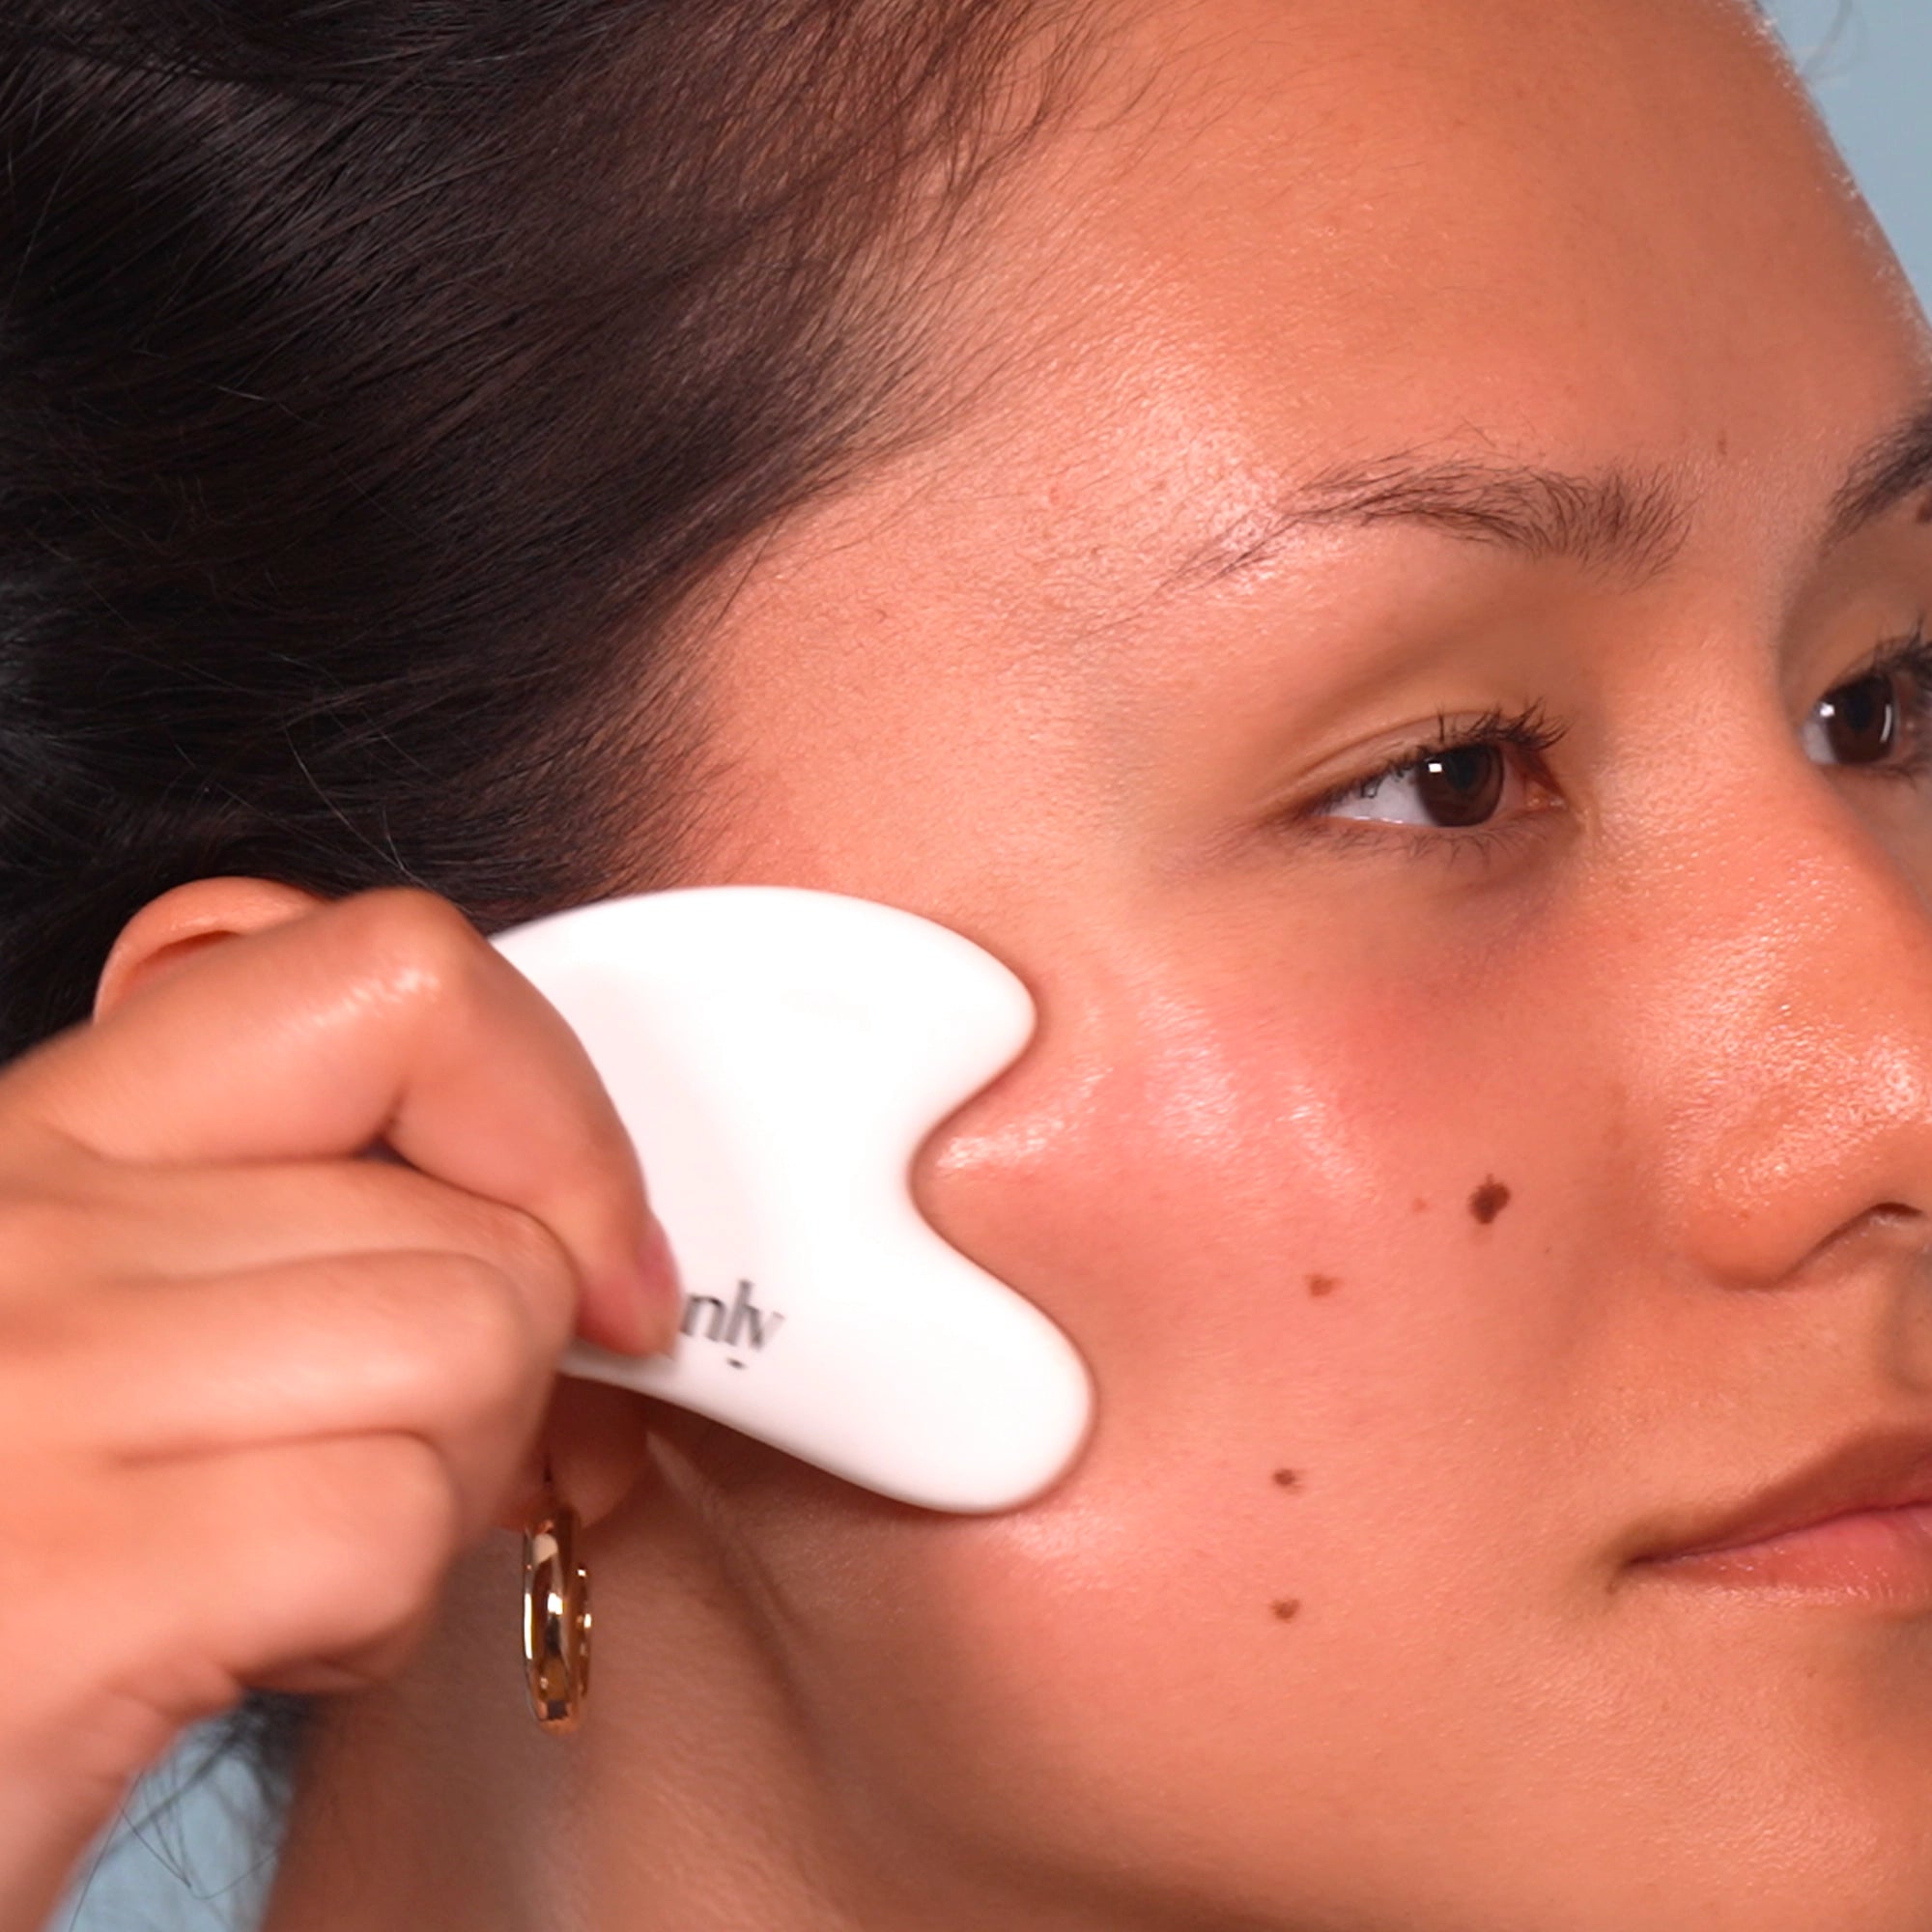 Ceramic gua sha for facial massage